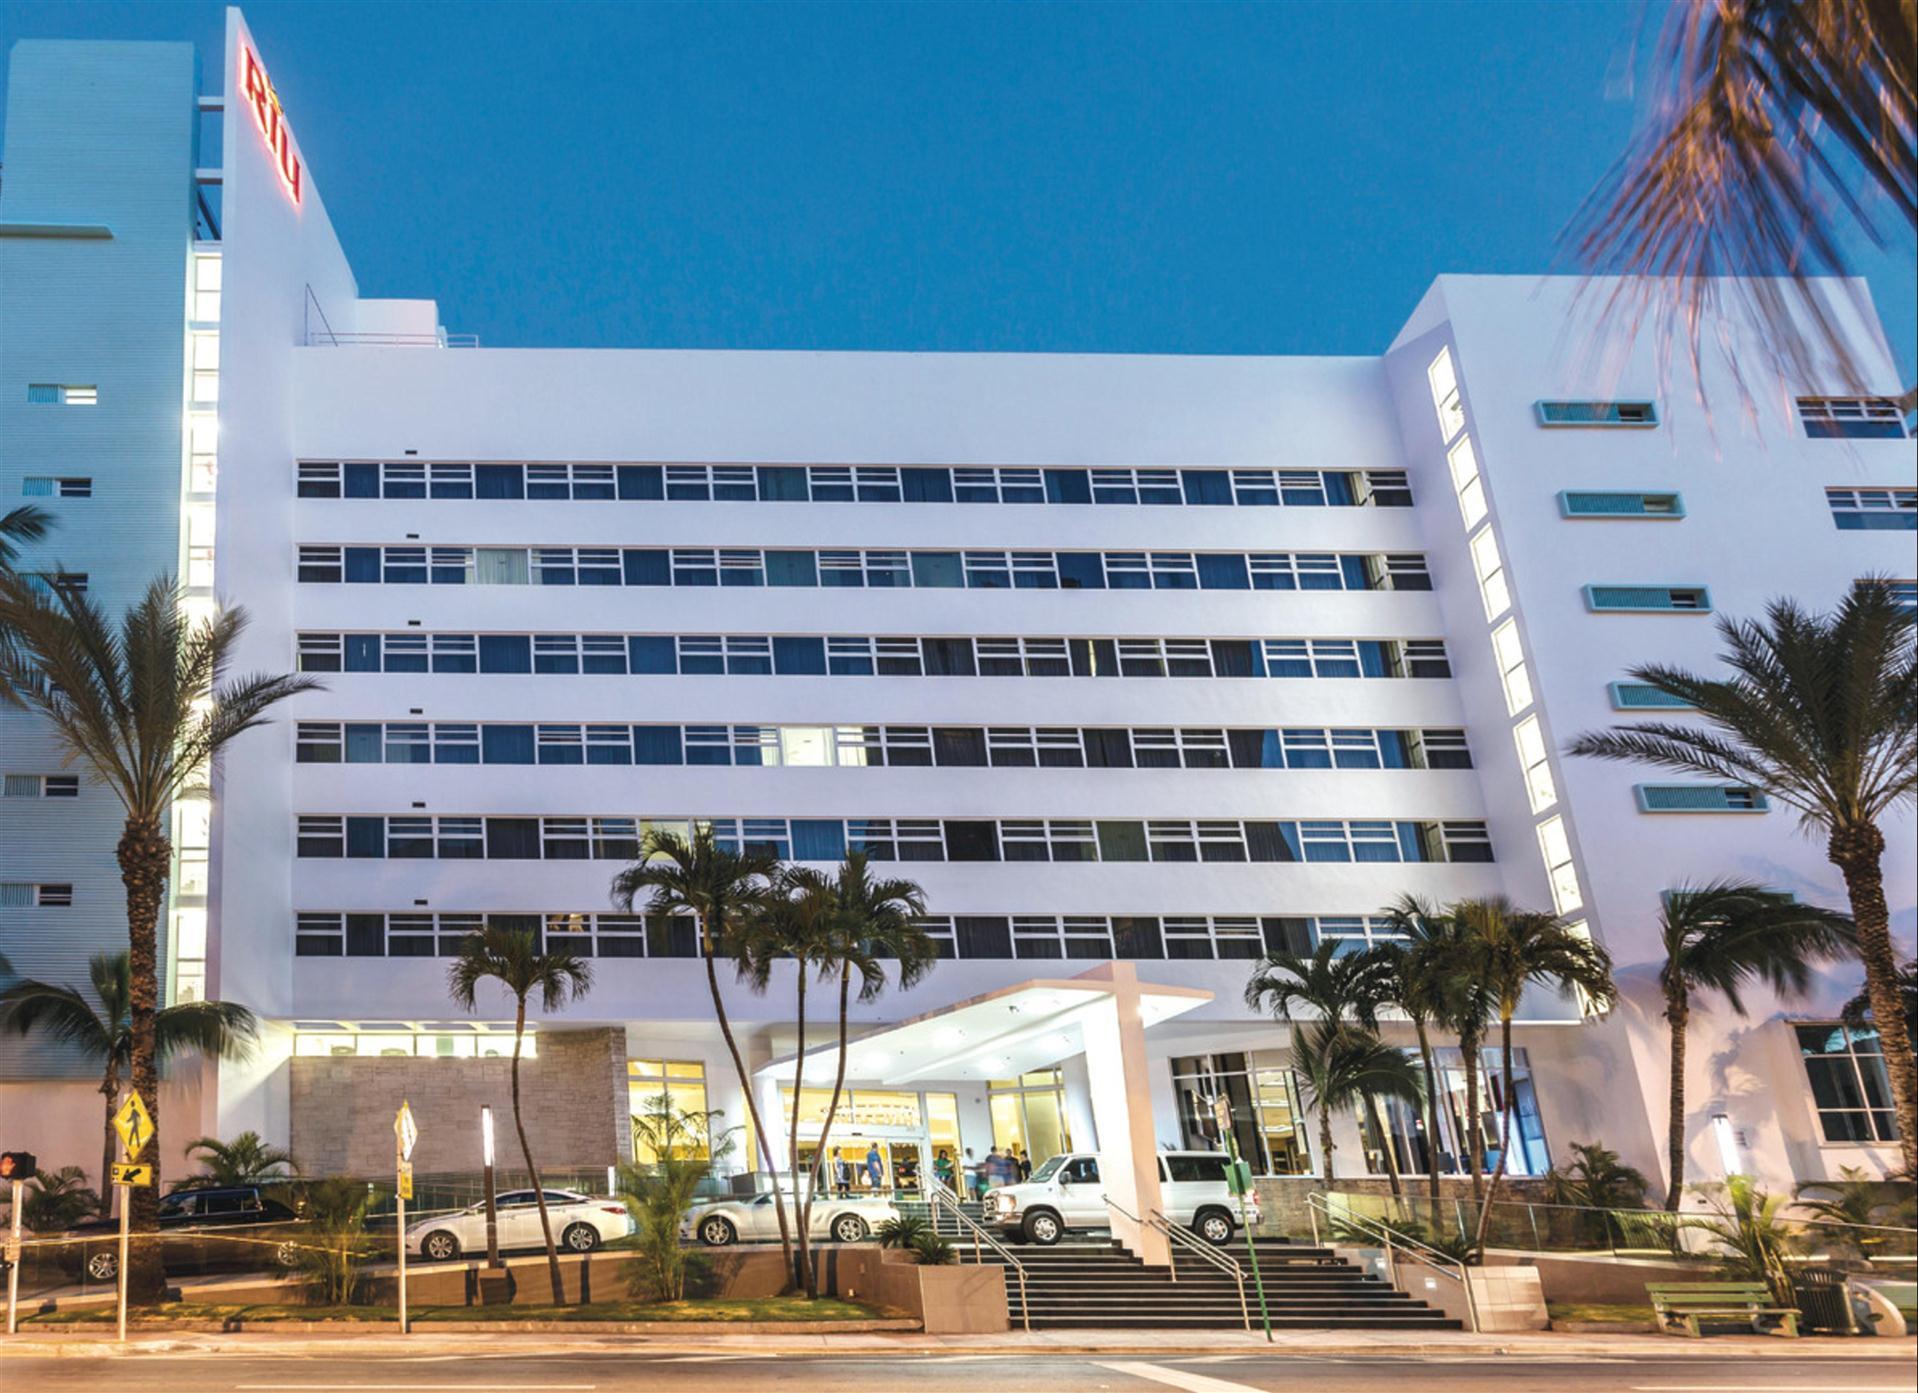 Hotel Riu Plaza Miami Beach in Miami Beach, FL